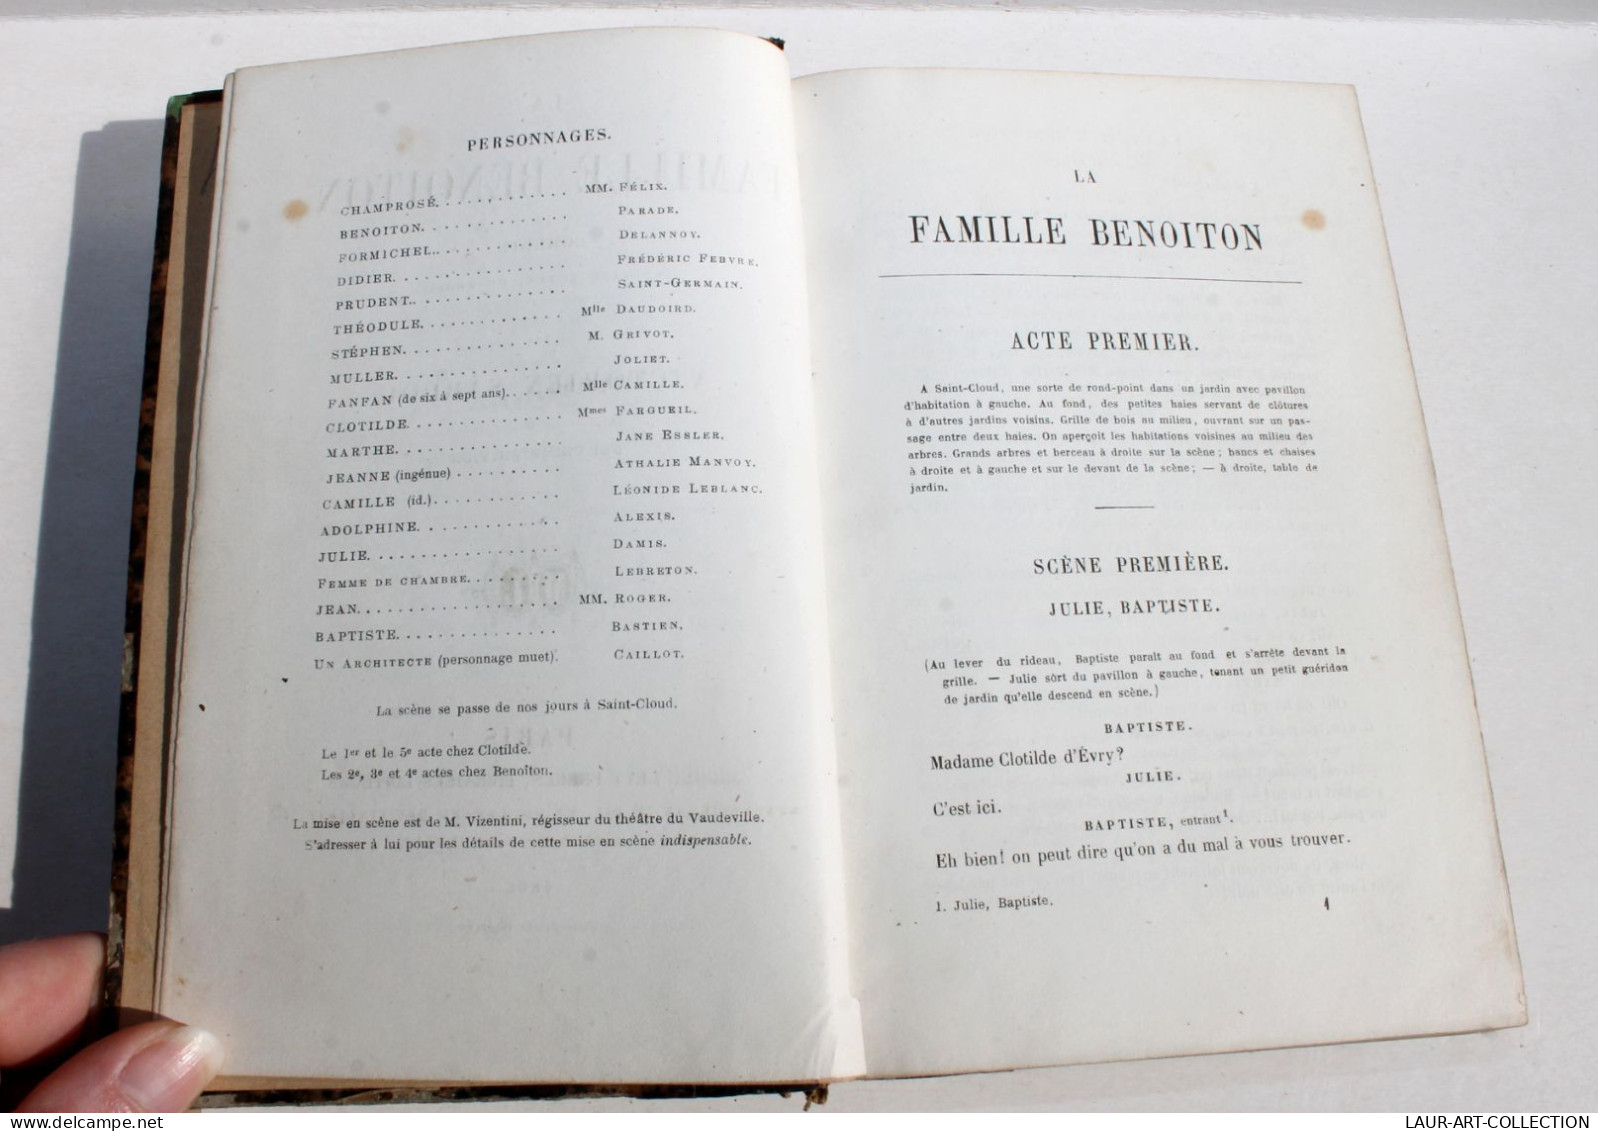 LA FAMILLE BENOITON COMEDIE En 5 ACTES De VICTORIEN SARDOU, 2e EDITION 1866 LEVY / ANCIEN LIVRE FRANCAIS (1803.7) - Französische Autoren